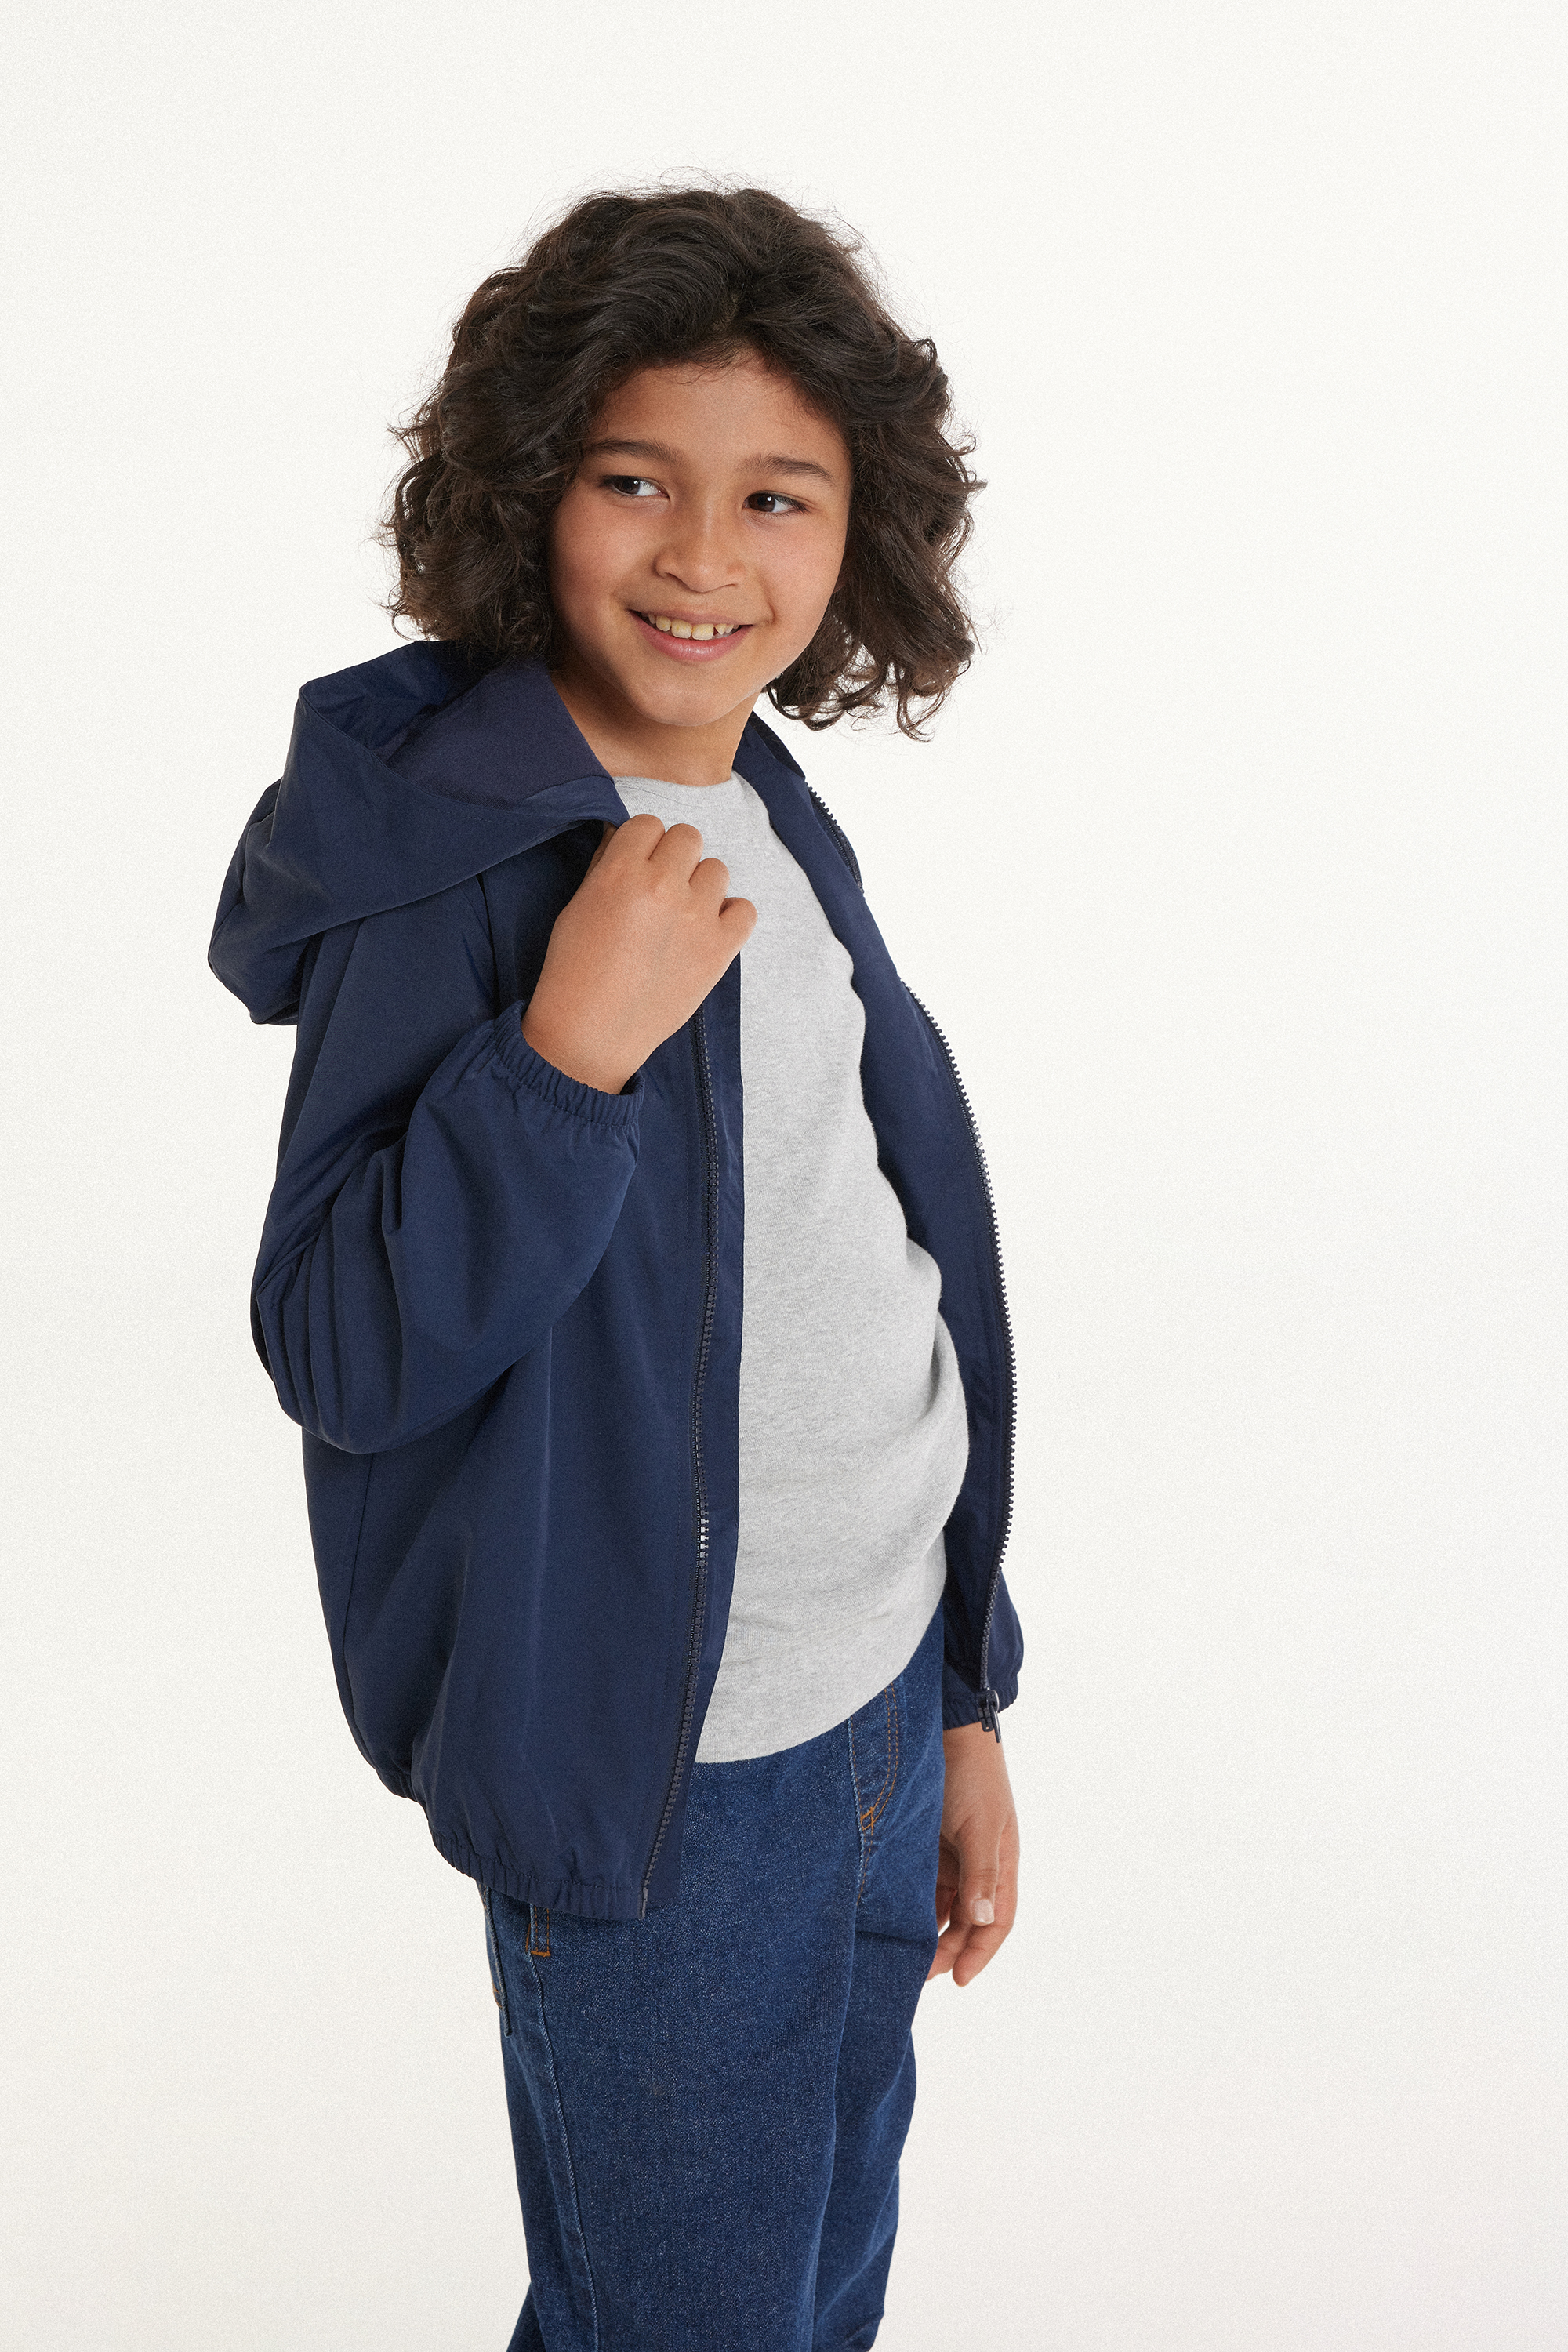 Unisex-Jacke mit Reißverschluss und Kapuze aus Funktionsgewebe für Kinder